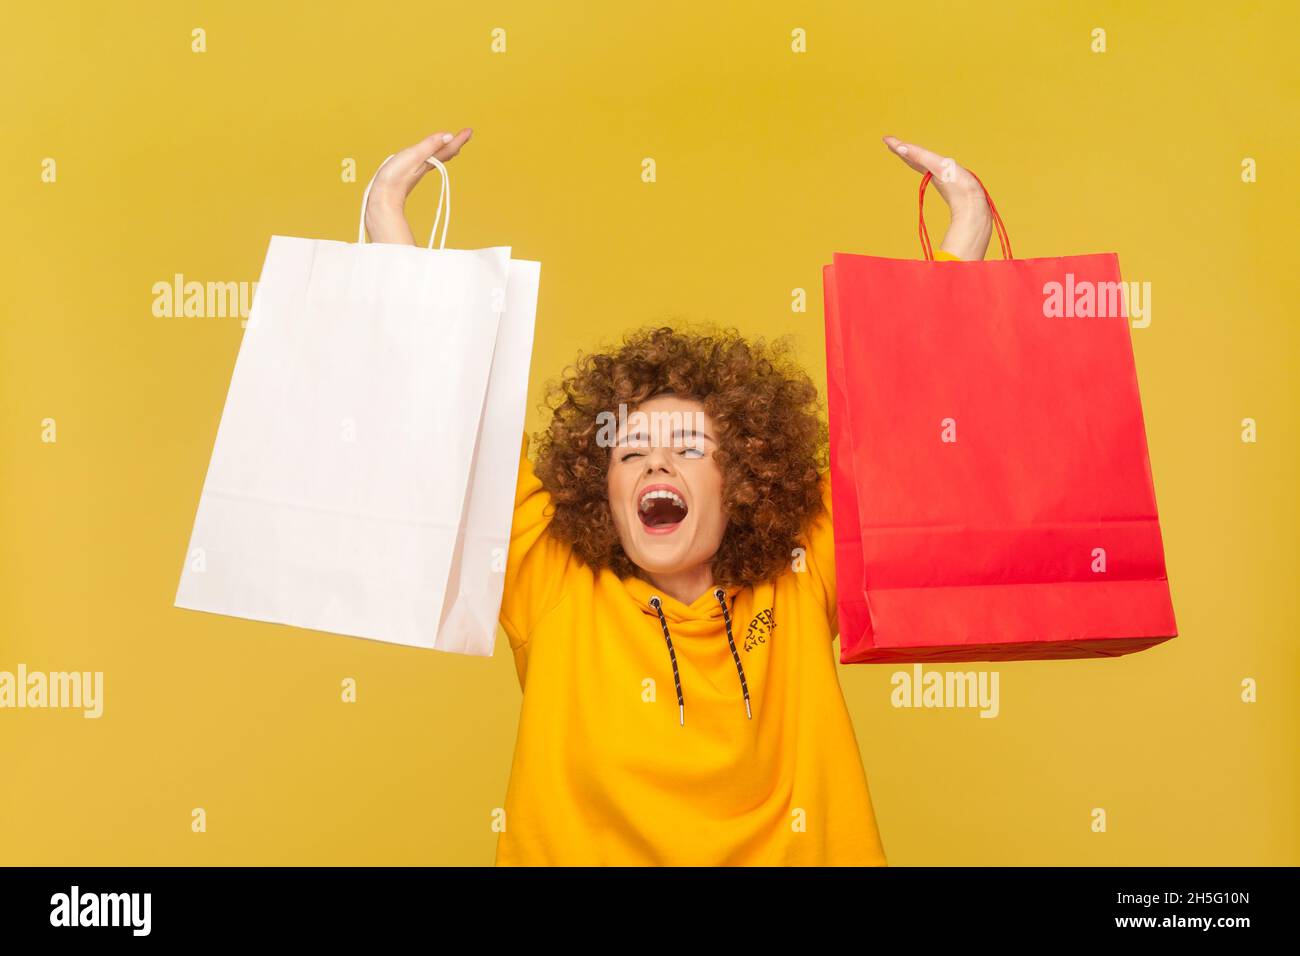 Porträt einer aufgeregten überglückten Frau mit Afro-Frisur, erhobenen Armen mit Einkaufstaschen, fröhlich brüllend, mit lässigem Hoodie. Innenaufnahme des Studios isoliert auf gelbem Hintergrund. Stockfoto